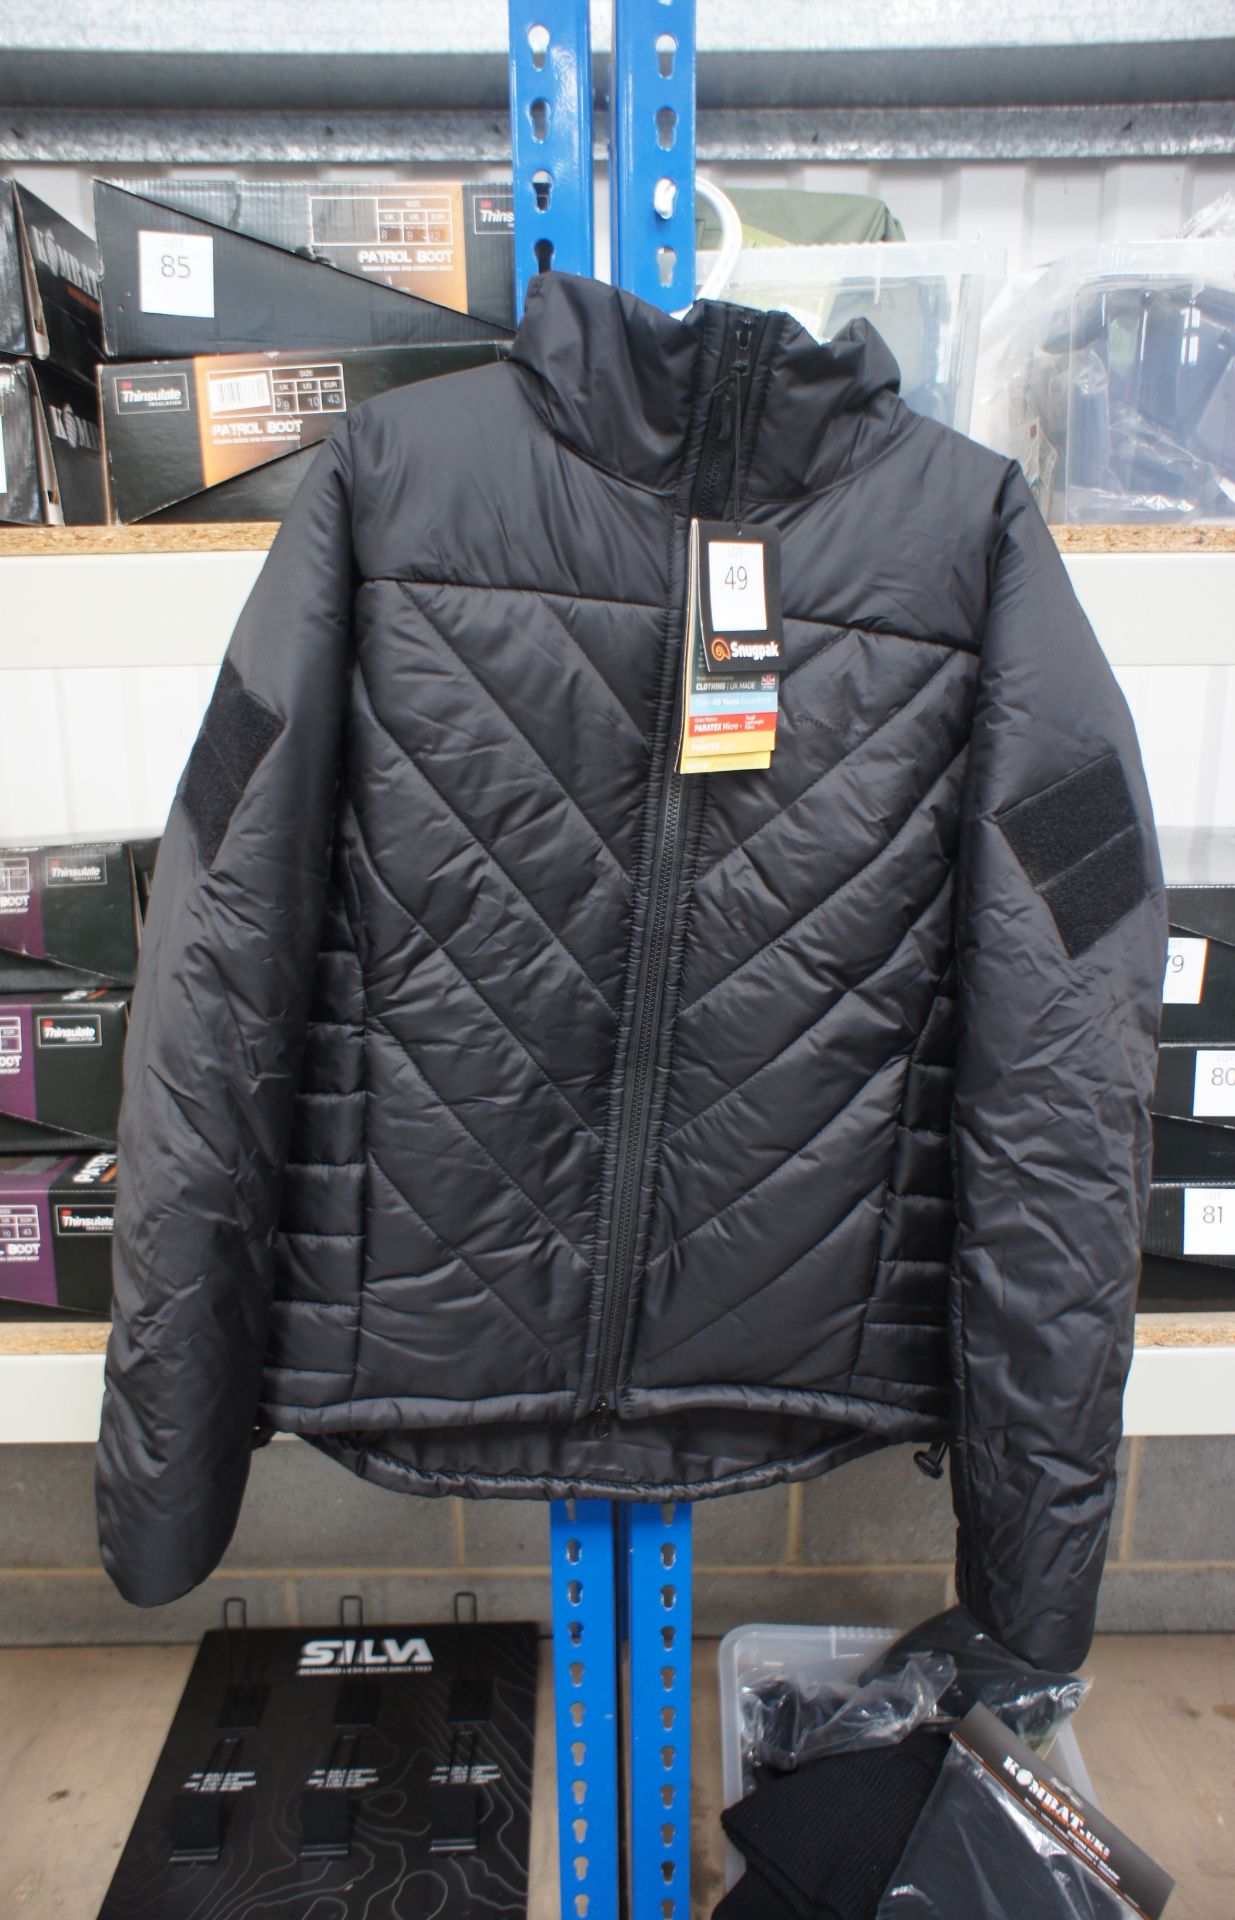 Snug Pack Softie Jacket SJ6 Black Medium Rrp. £89.99 - Image 2 of 2